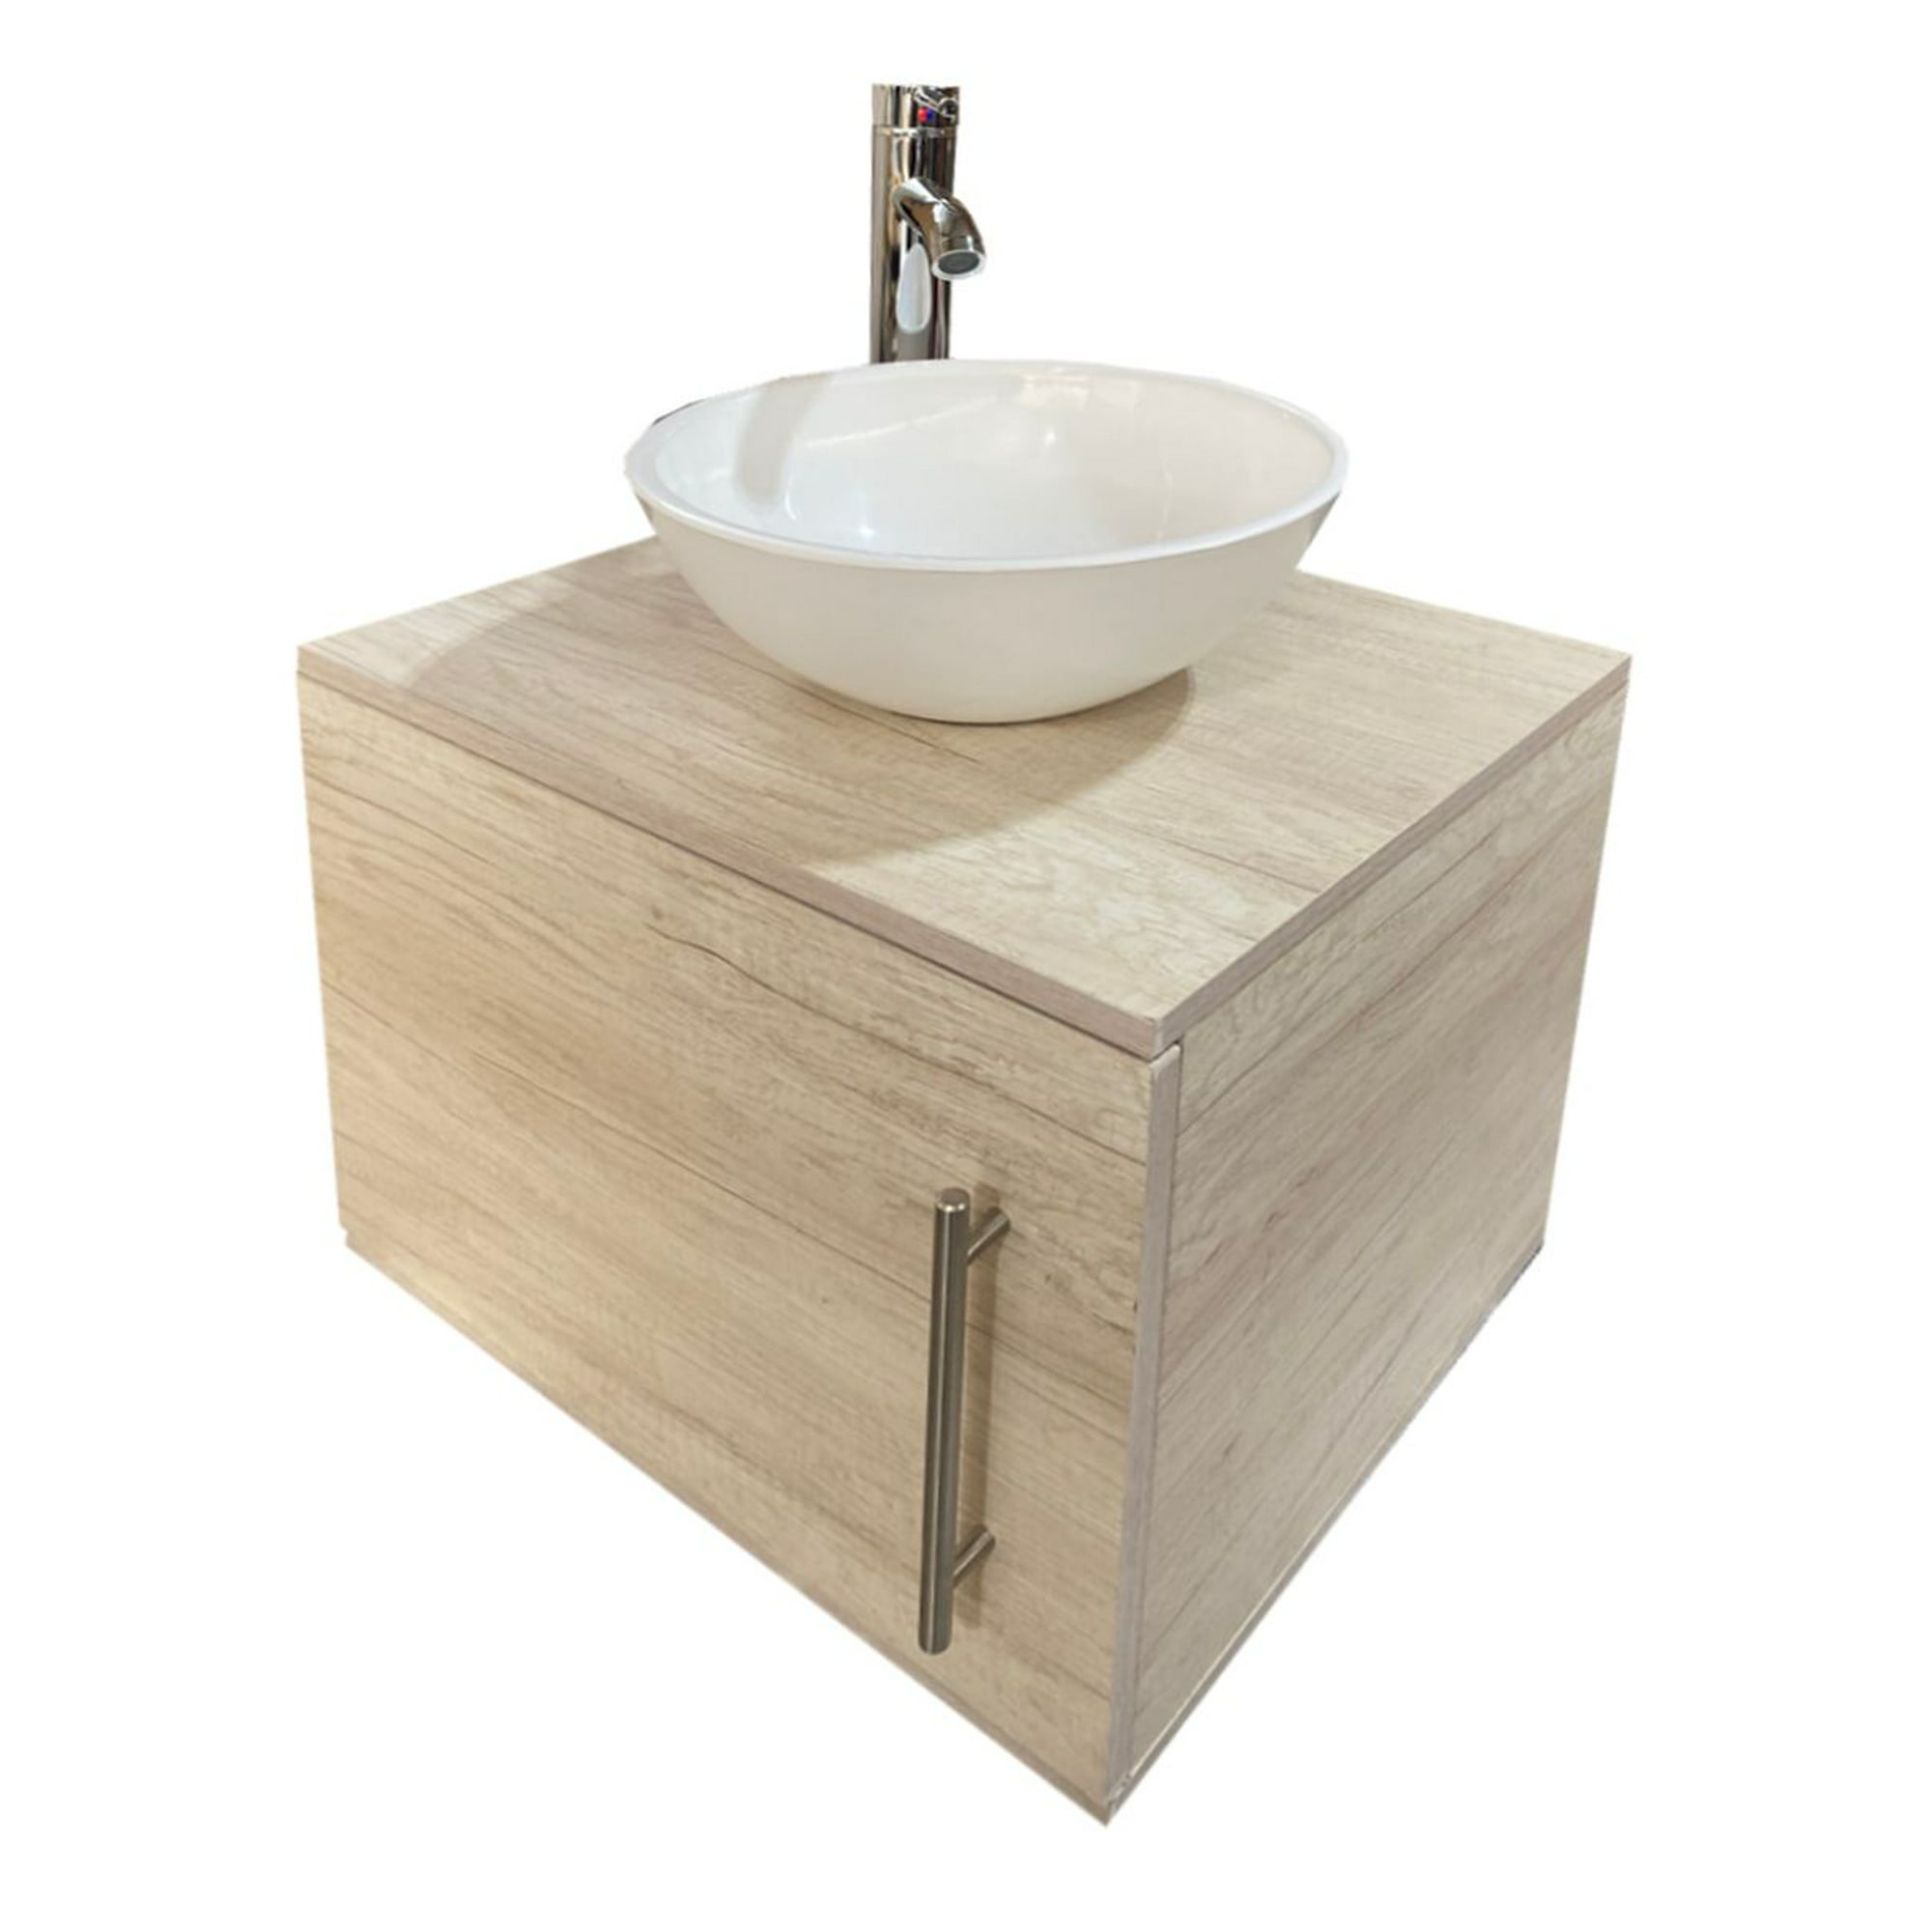 Gabinete flotante para baño sin llave y ovalin (Encino polar) decomobil gabinete de almacenimiento